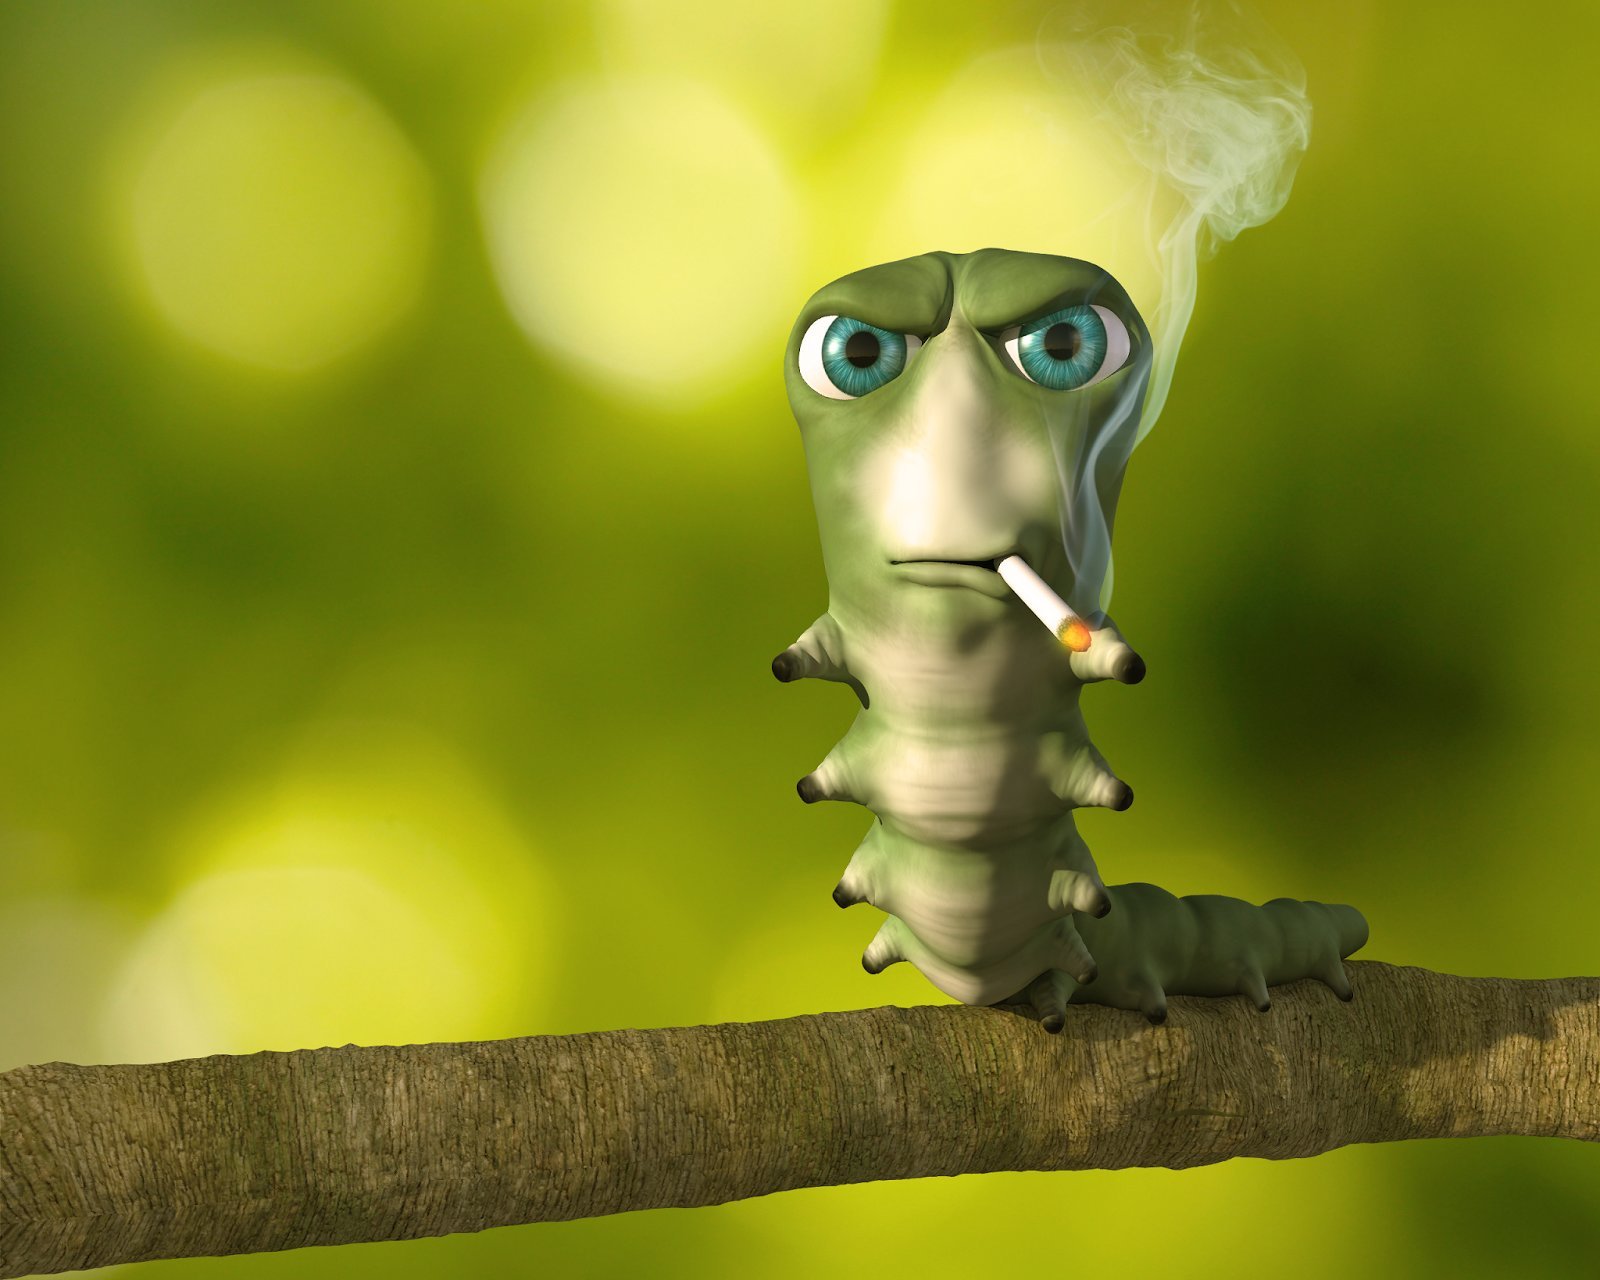 Smoking Caterpillar Original Image